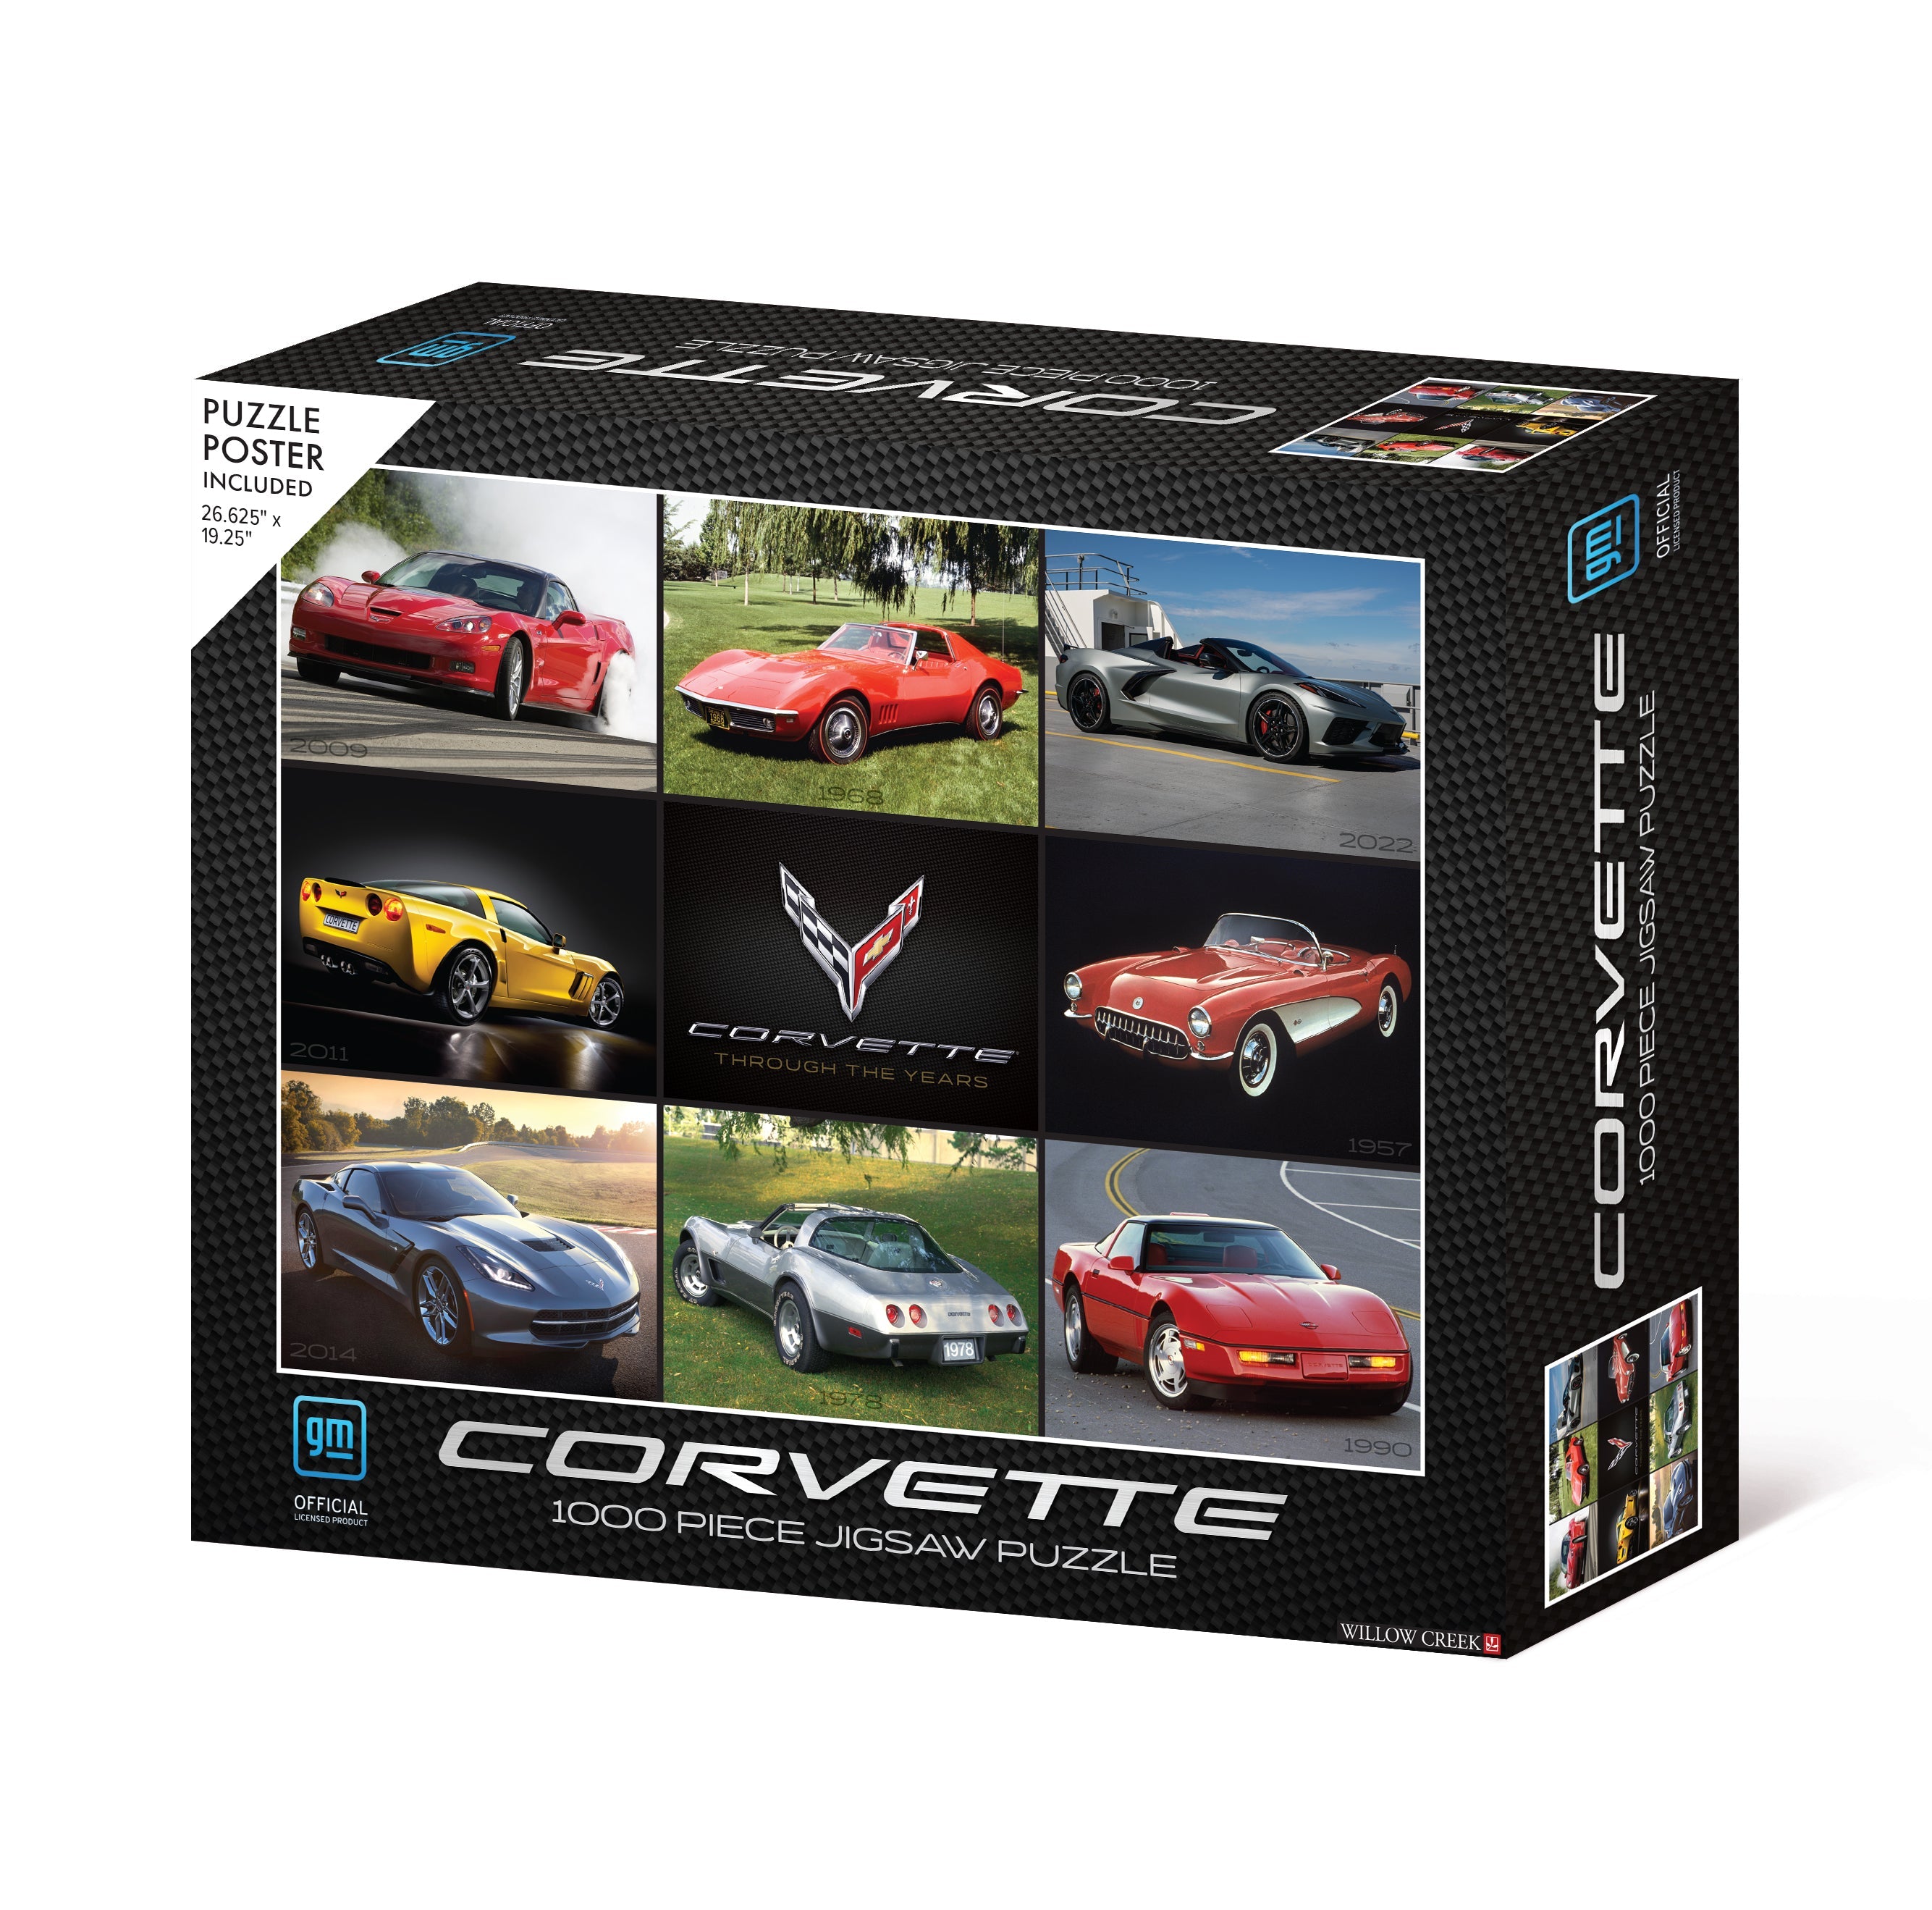 Corvette 1000 Piece - Jigsaw Puzzle